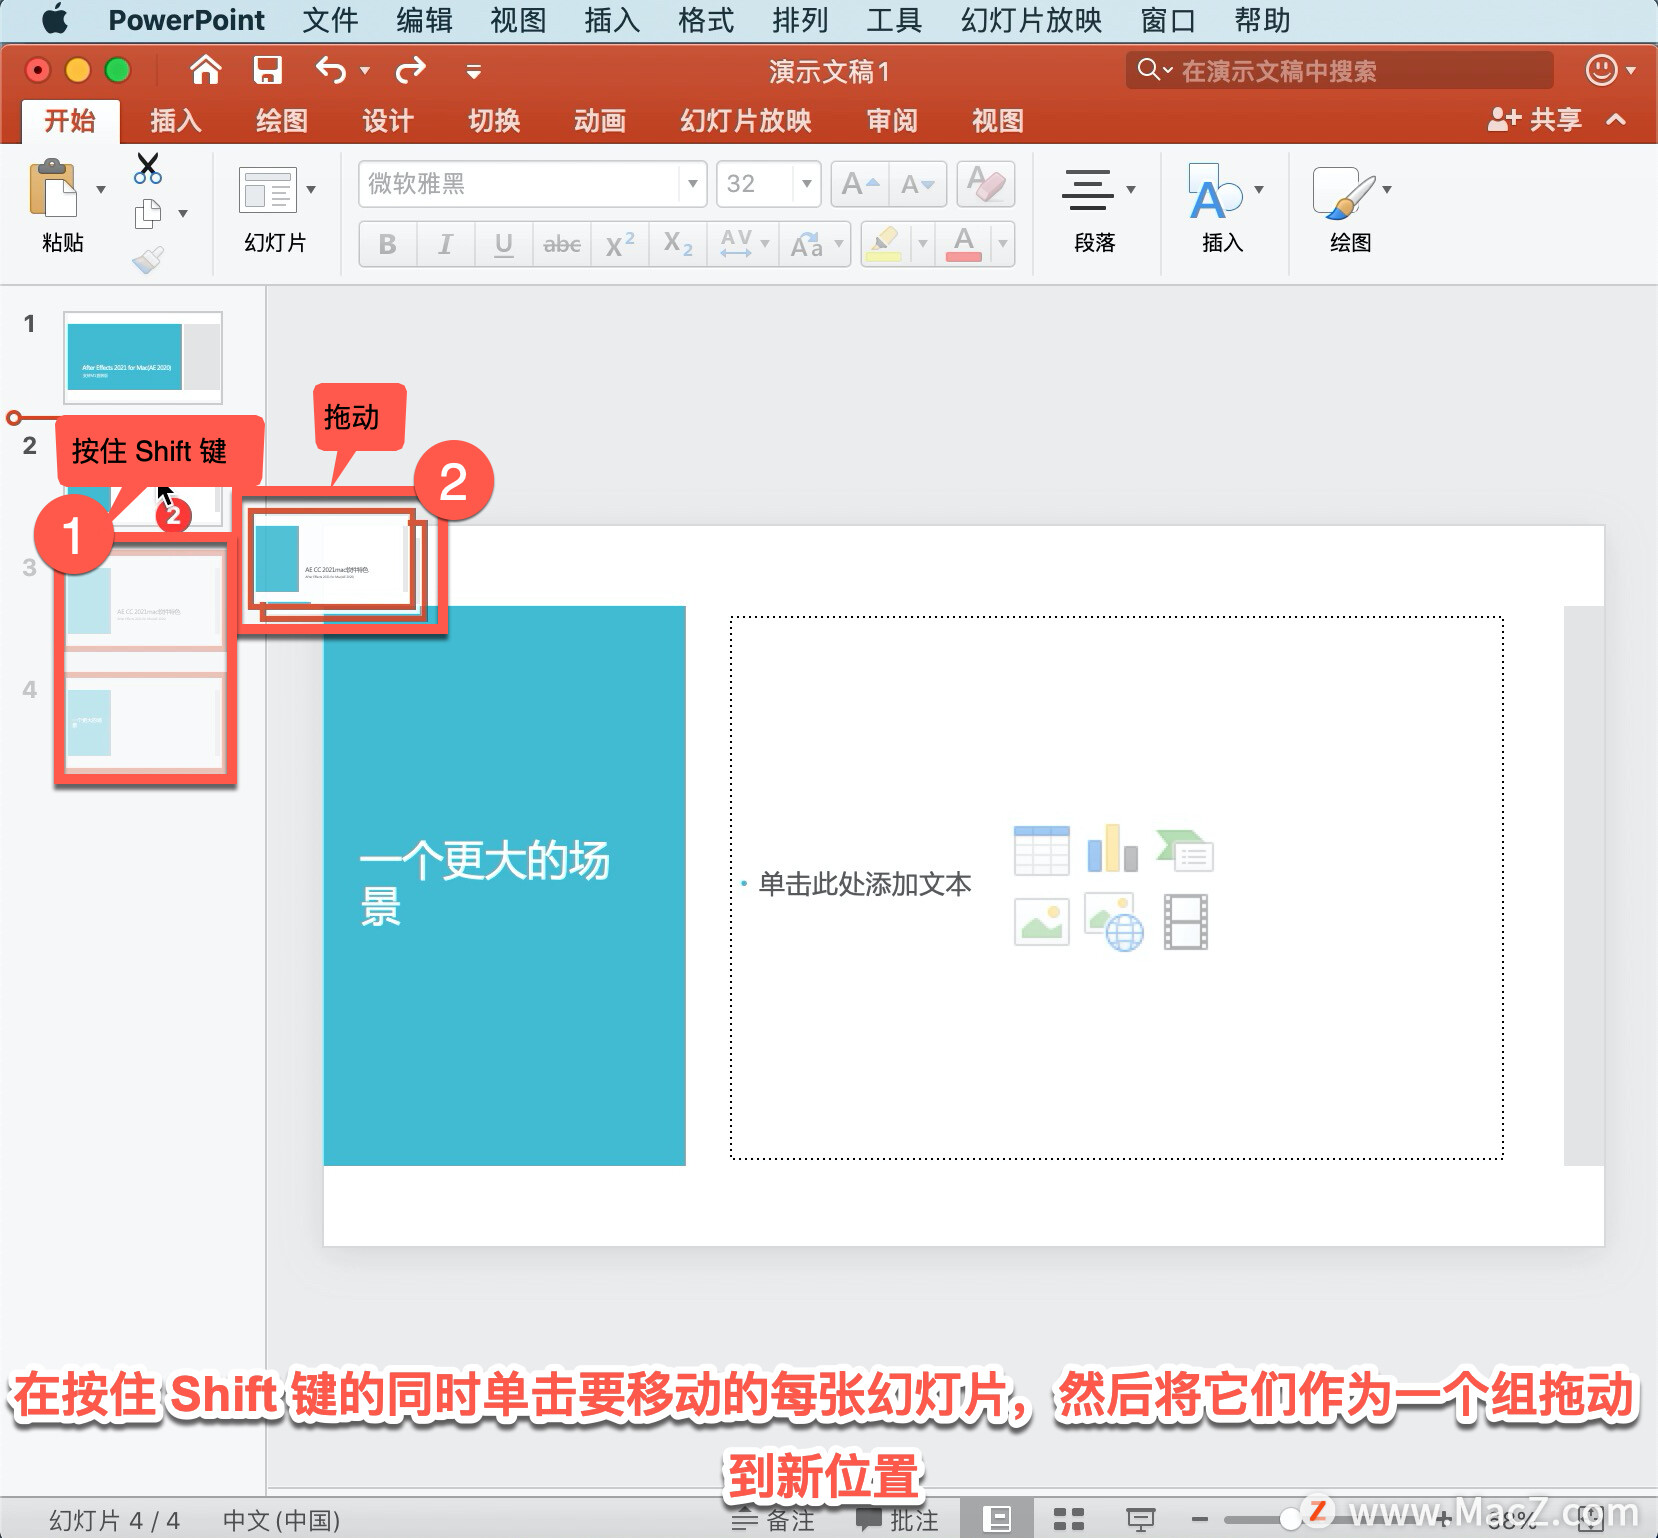 PowerPoint 教程「3」，如何在 PowerPoint 中添加、重新排列、复制和删除幻灯片？